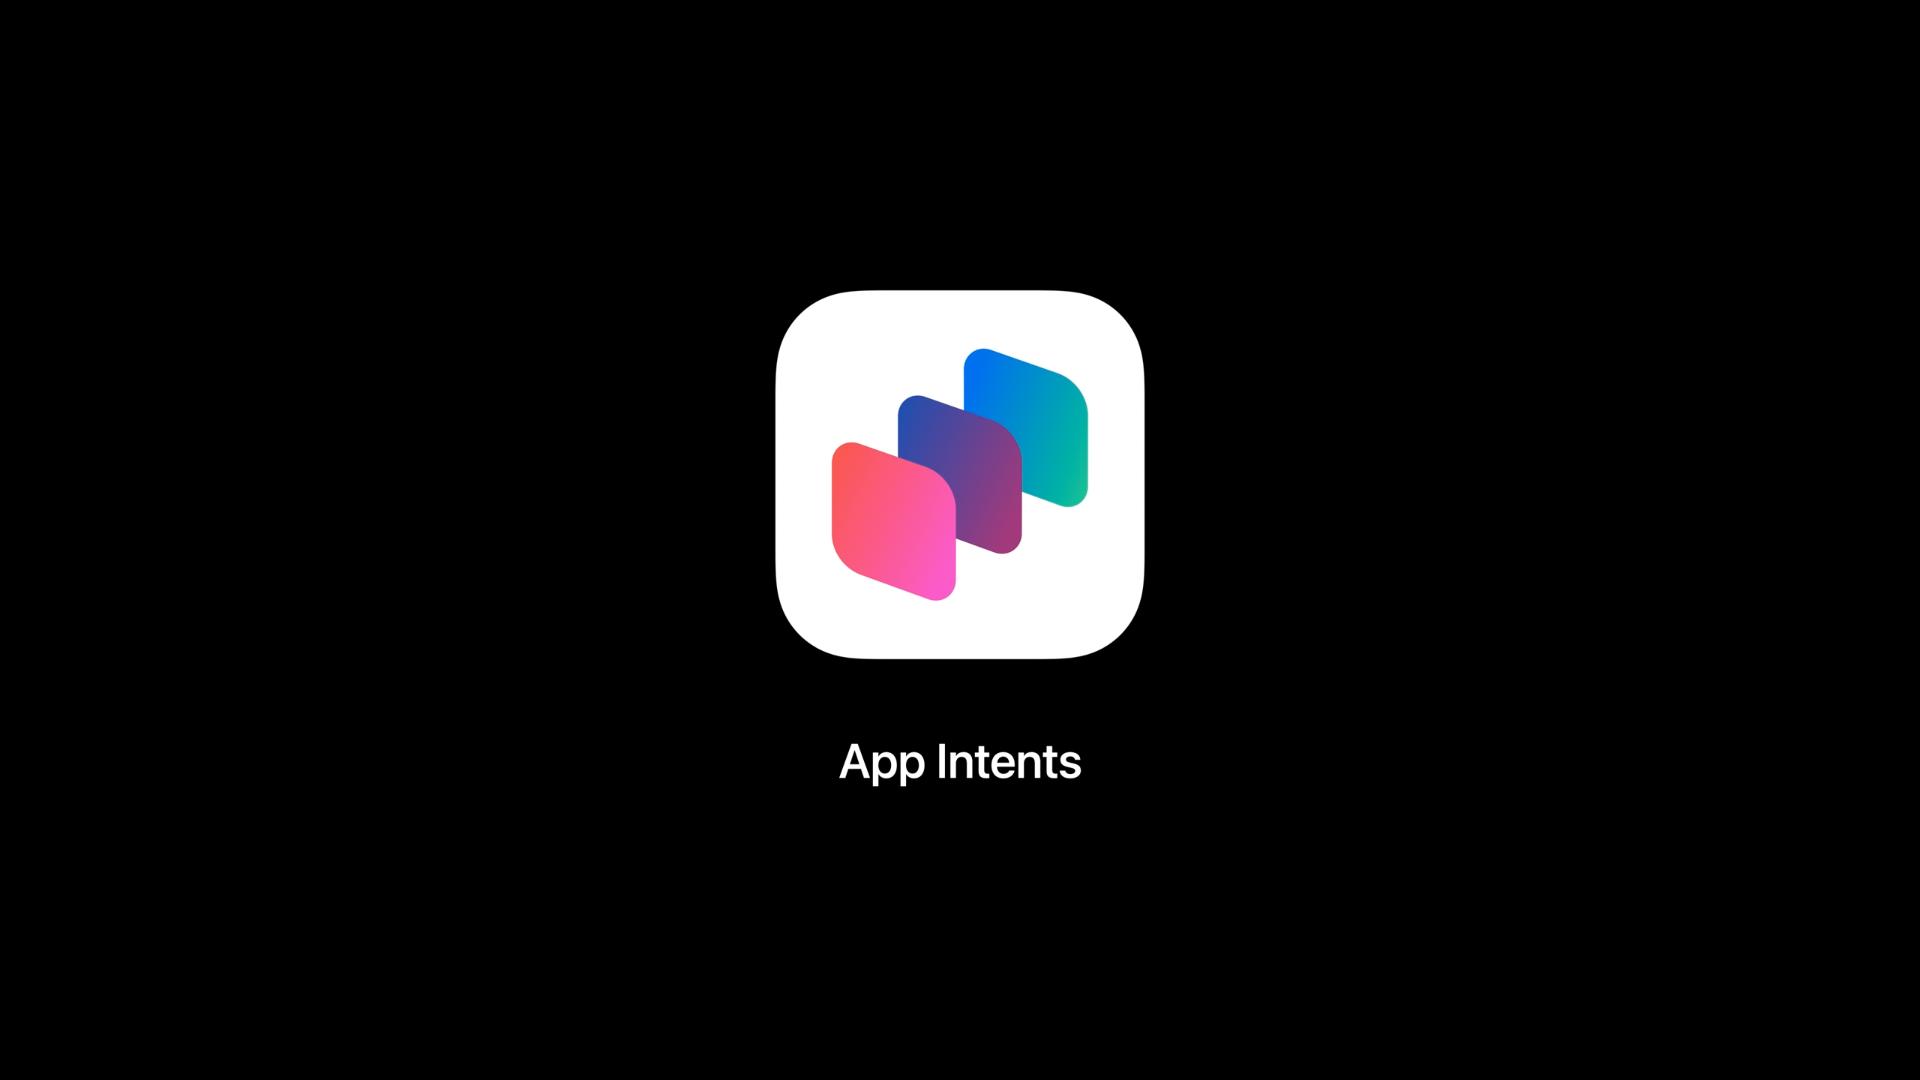 Tangkapan layar apel "Selami maksud aplikasi" sesi pengembang menampilkan logo App Intents di layar.